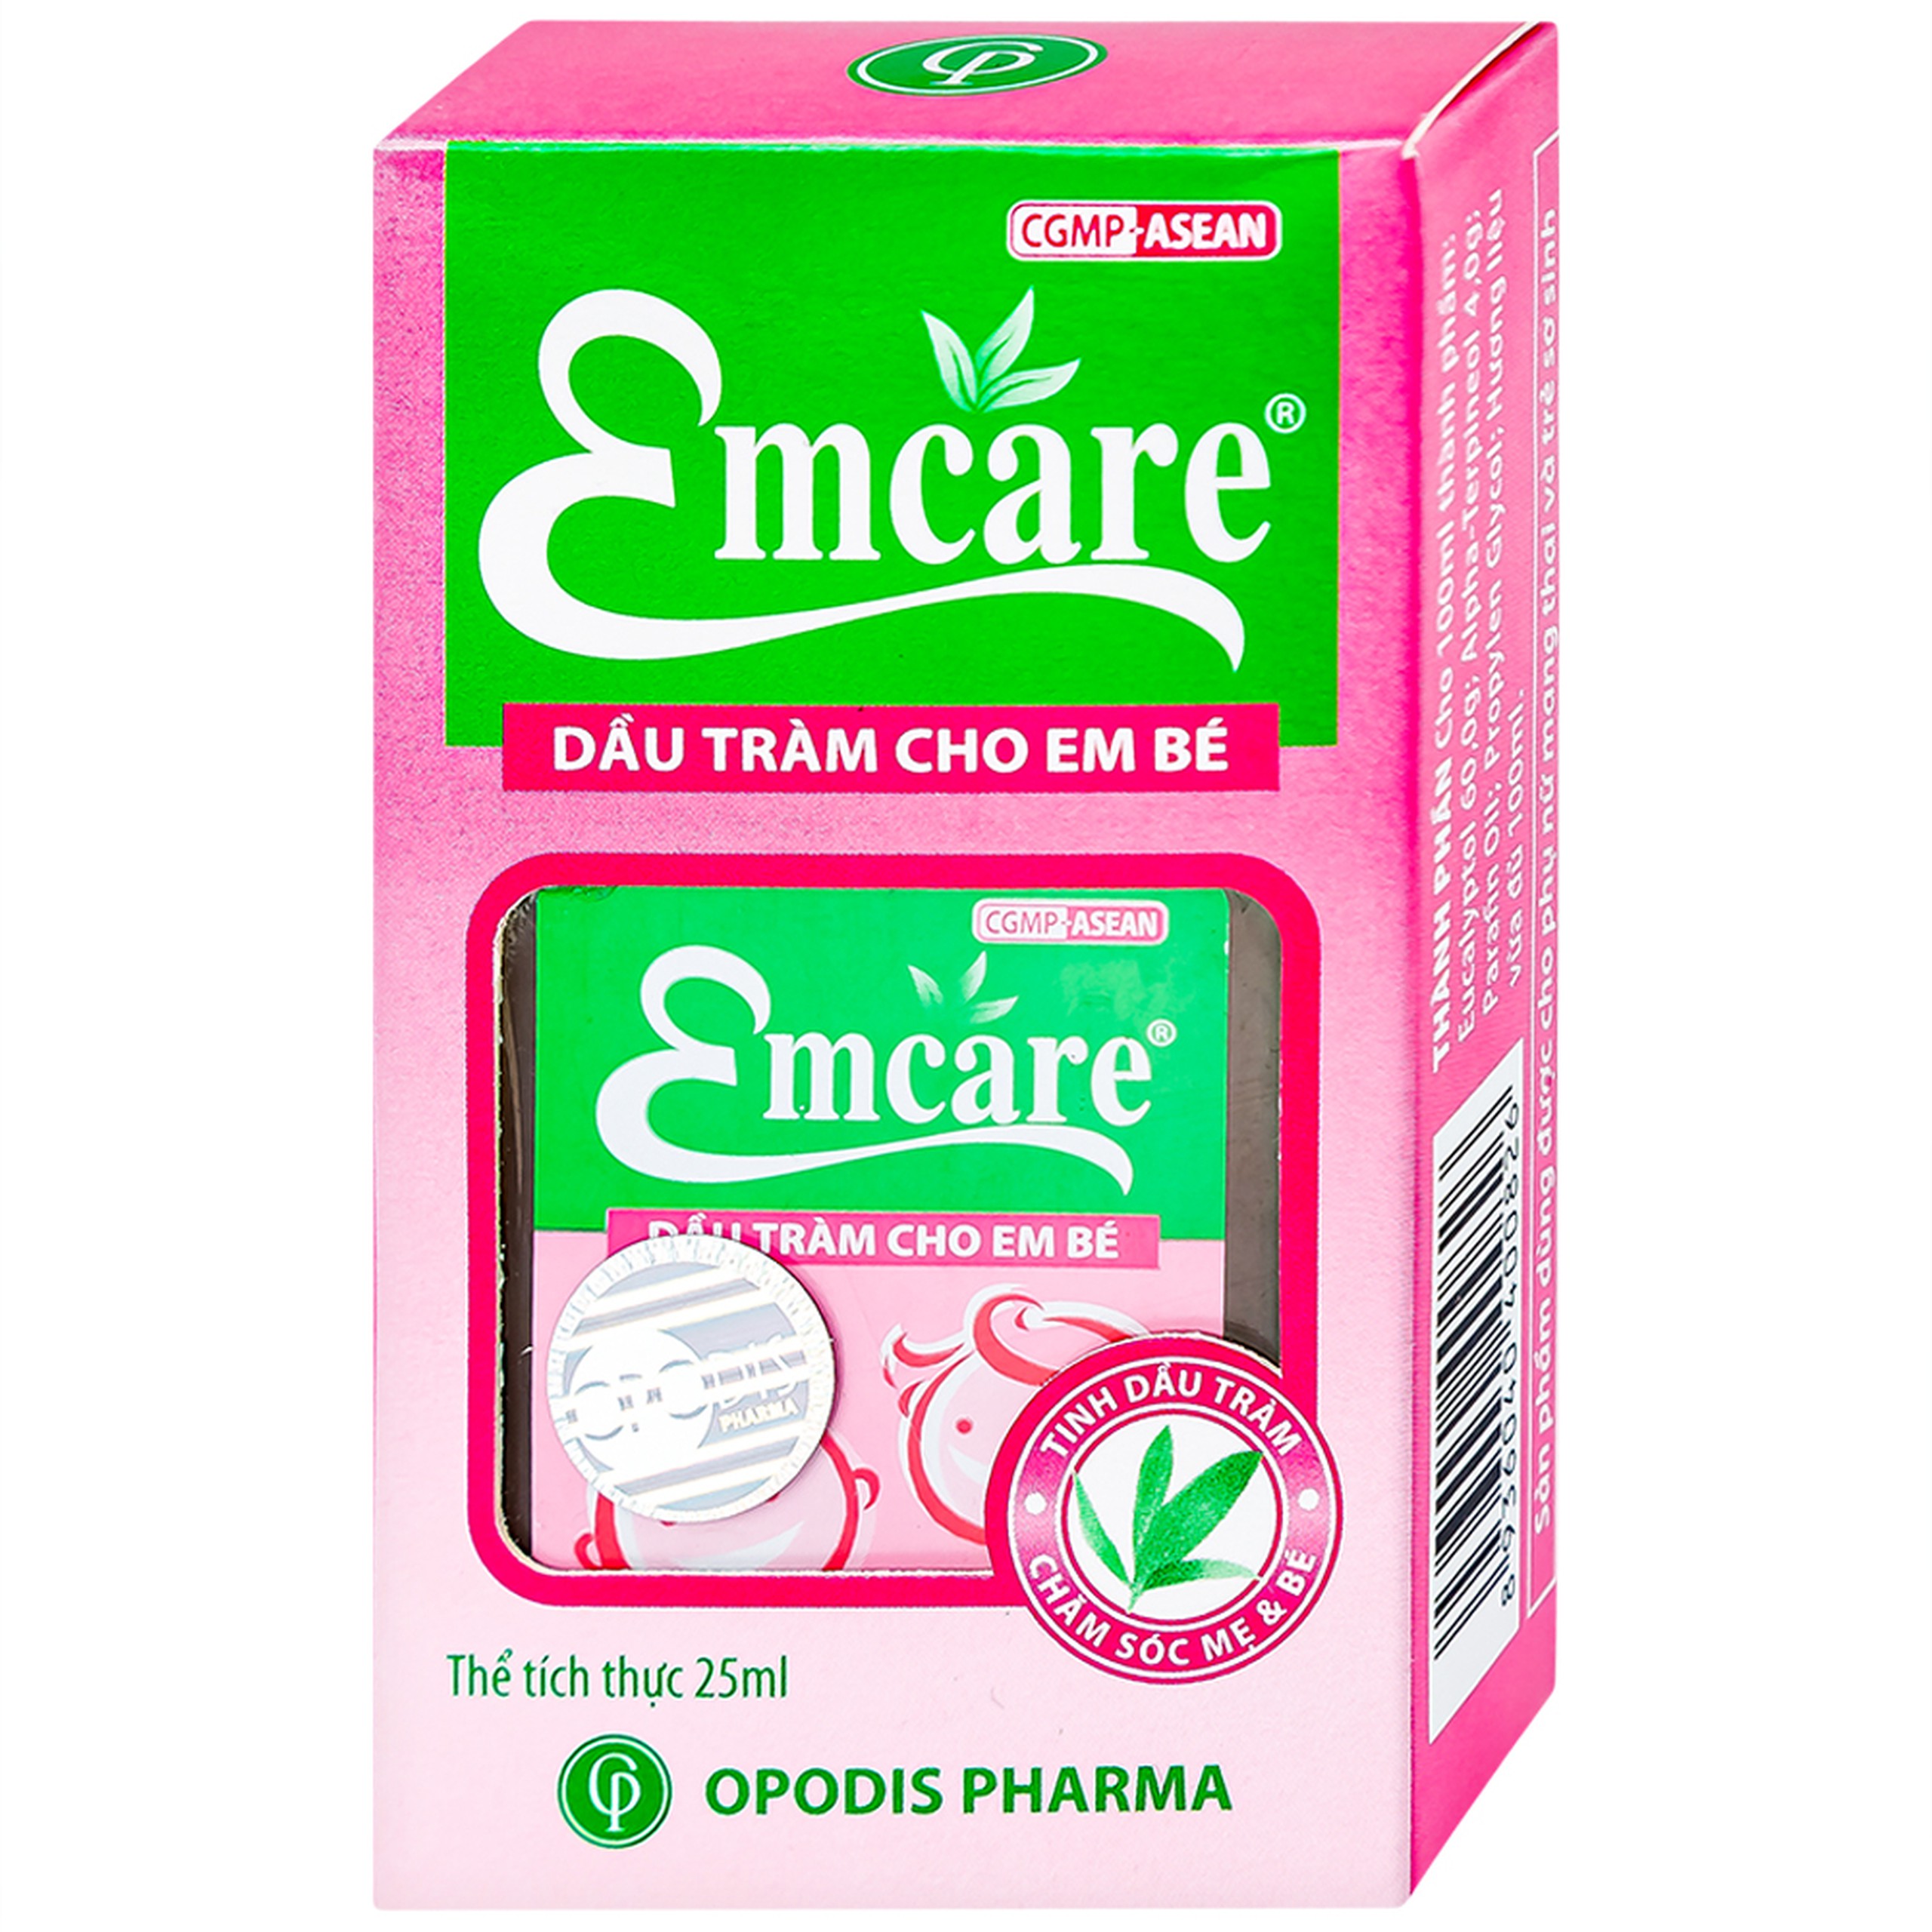 Dầu tràm cho em bé Emcare Opodis Pharma hỗ trợ phòng cảm lạnh, cảm cúm, ho khan (25ml)